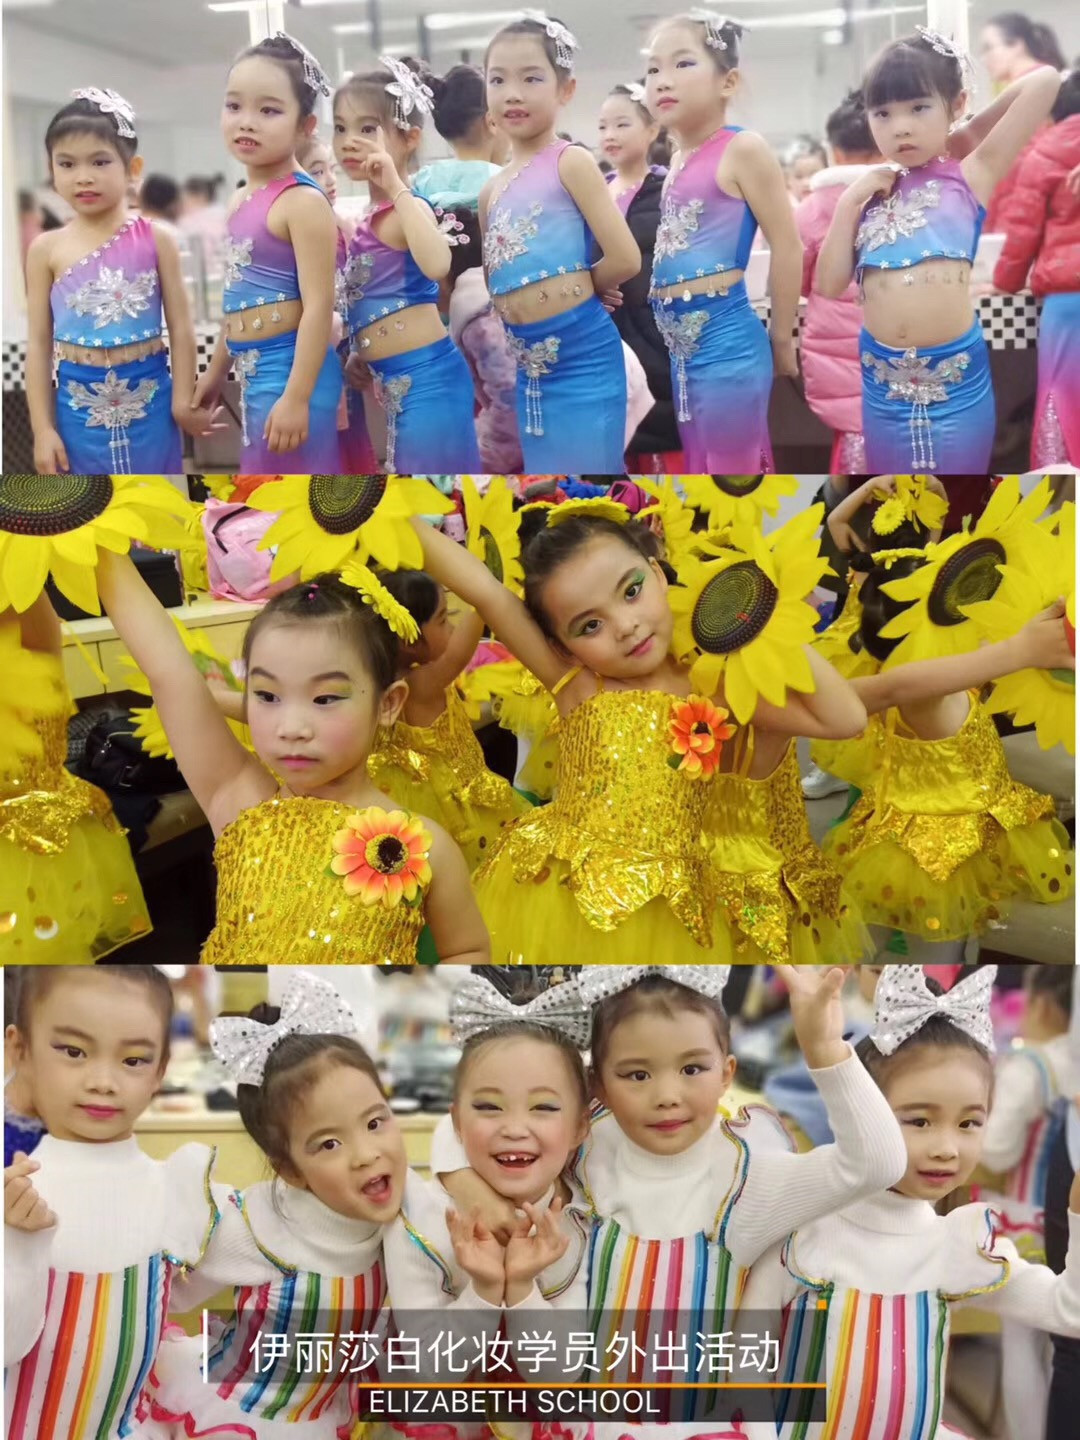 伊丽莎白化妆学校为苏蕾艺术舞蹈培训机构的小宝贝们化妆_伊丽莎白学校_化妆学校